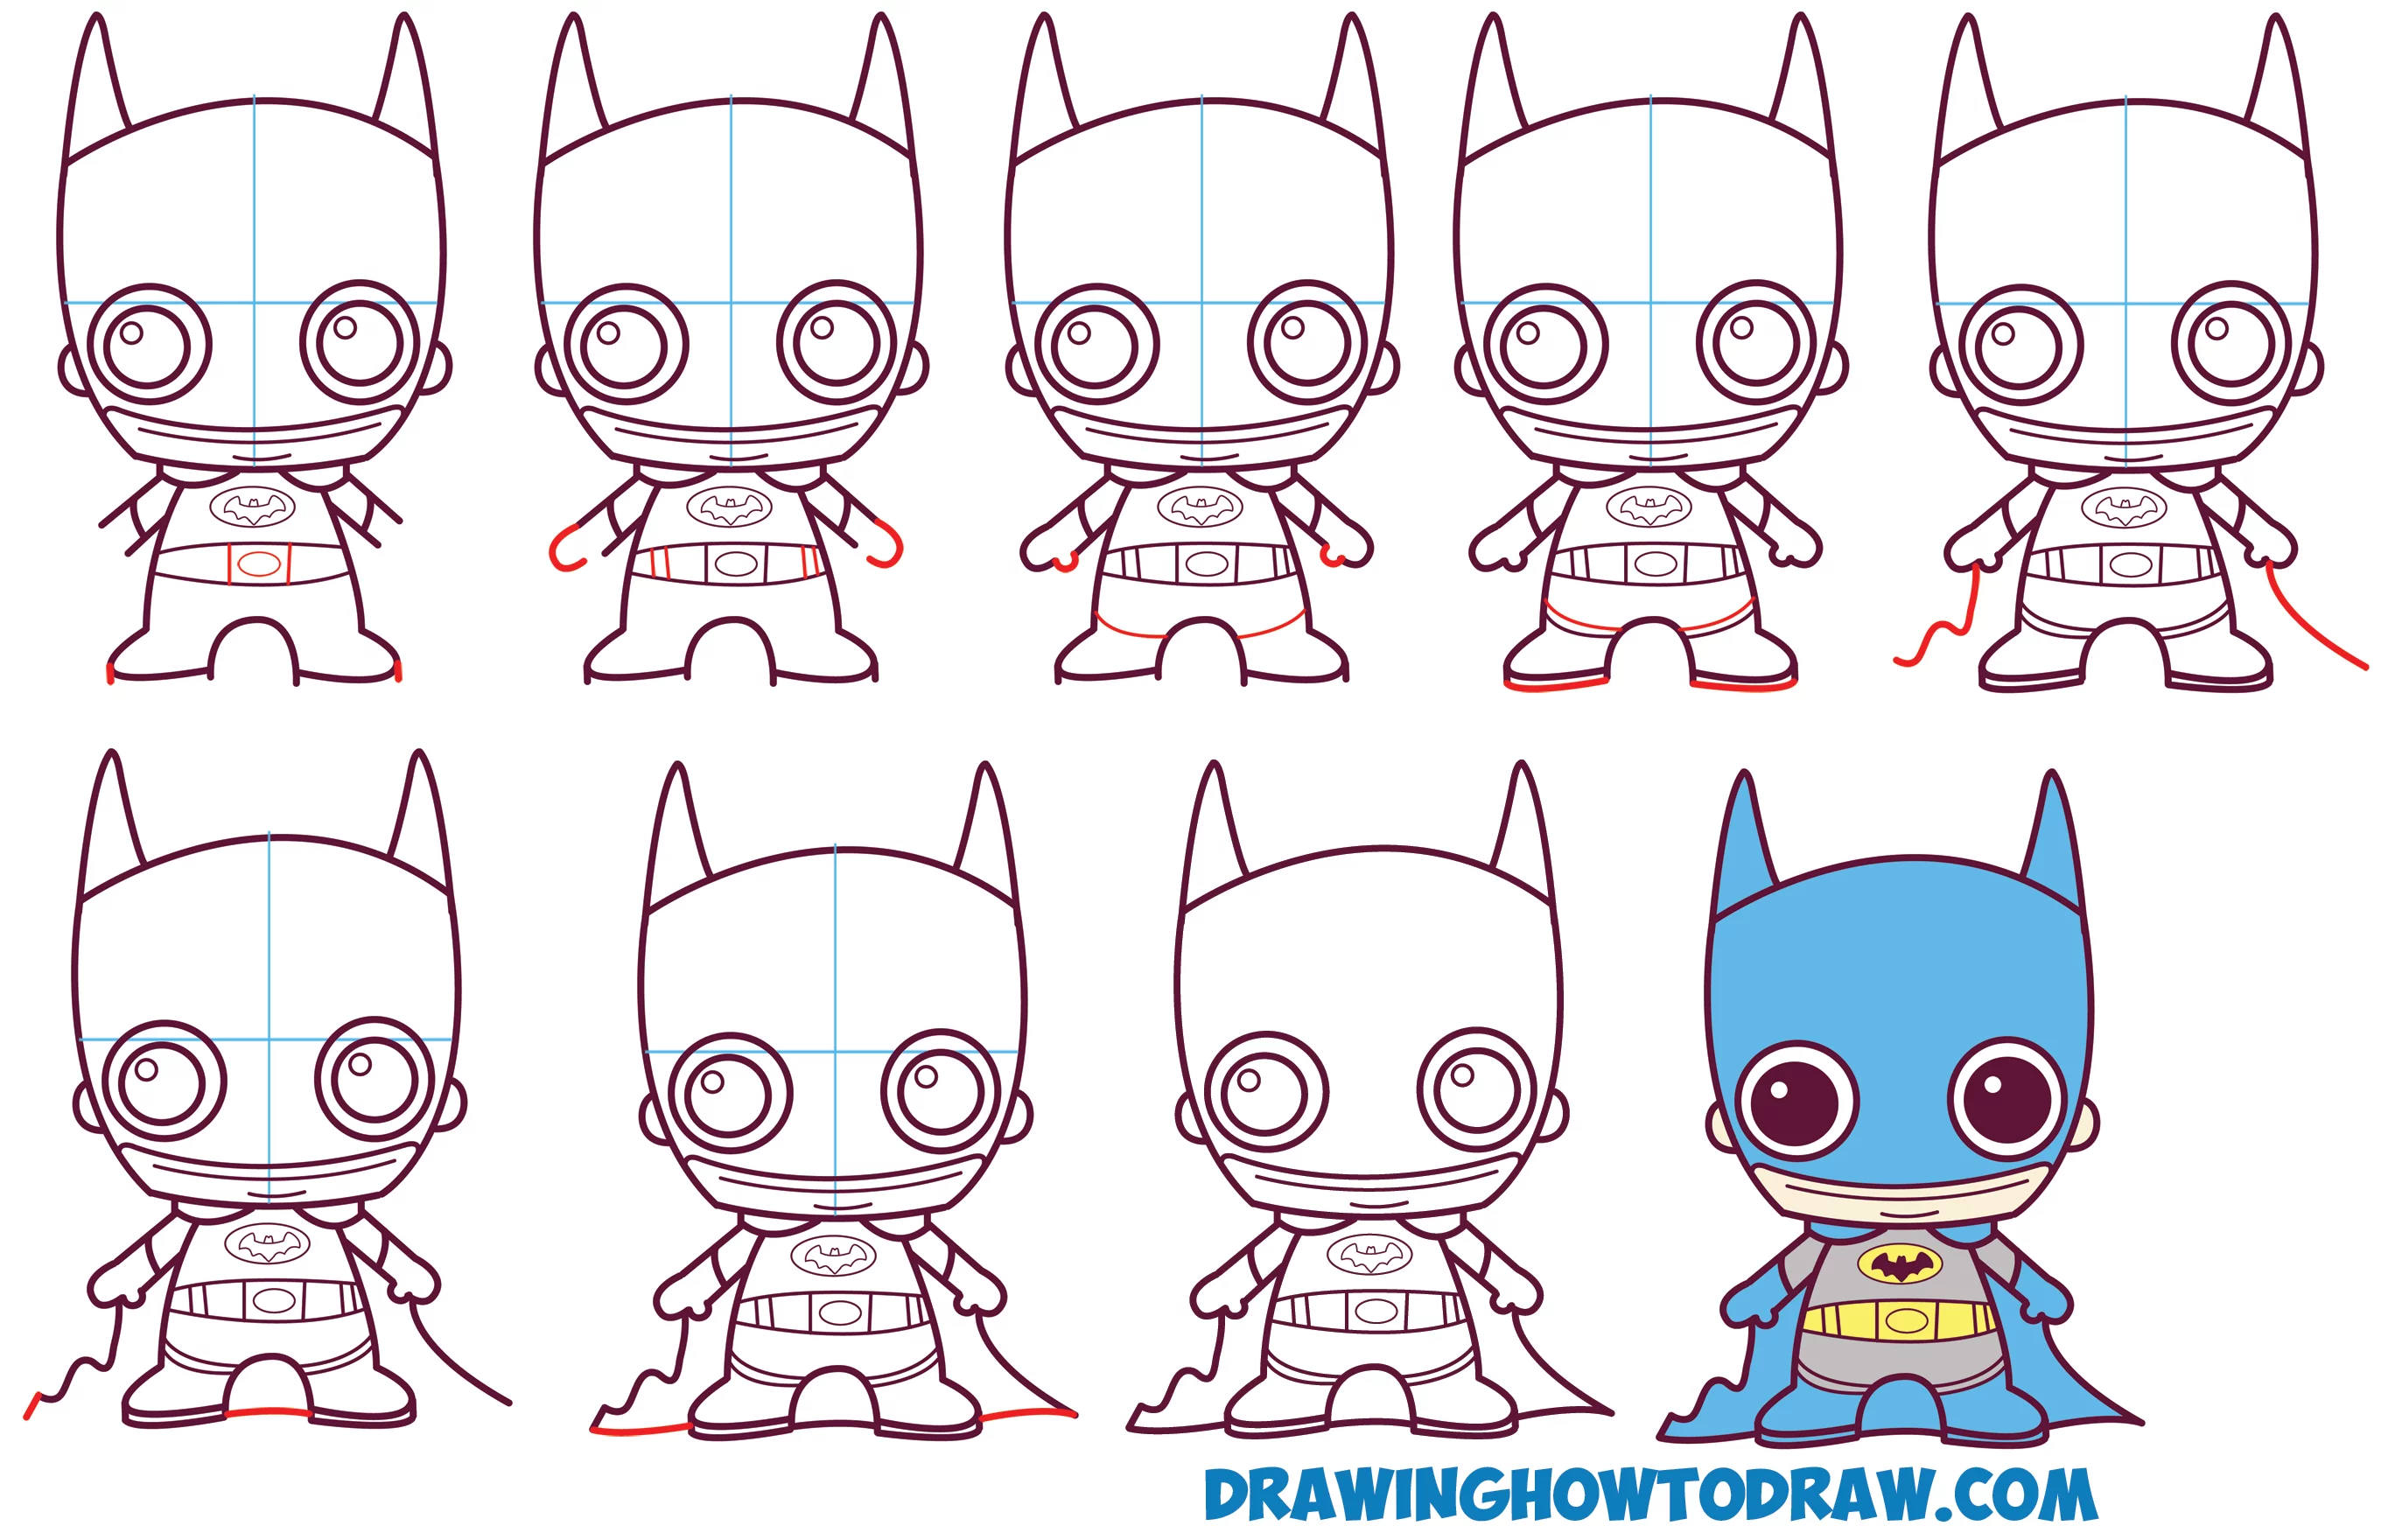 lär dig att rita söt / Baby / Kawaii / Chibi Batman från DC Comics i enkla steg ritning lektion för barn